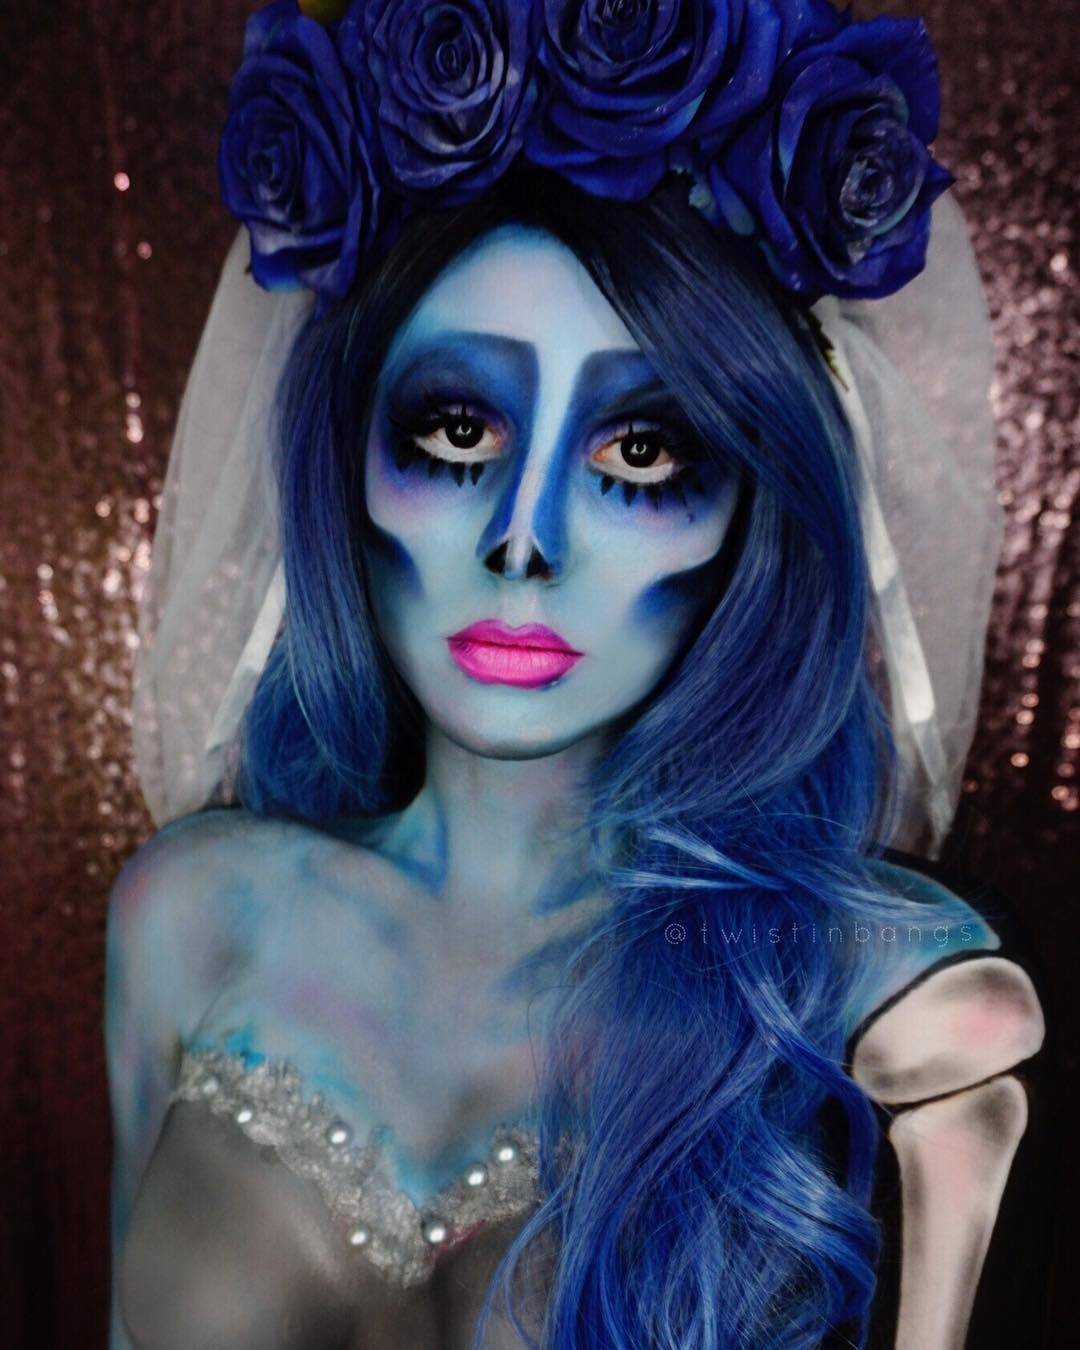 ✦ макияж на хеллоуин ✦ 20 неповторимых образов ✦